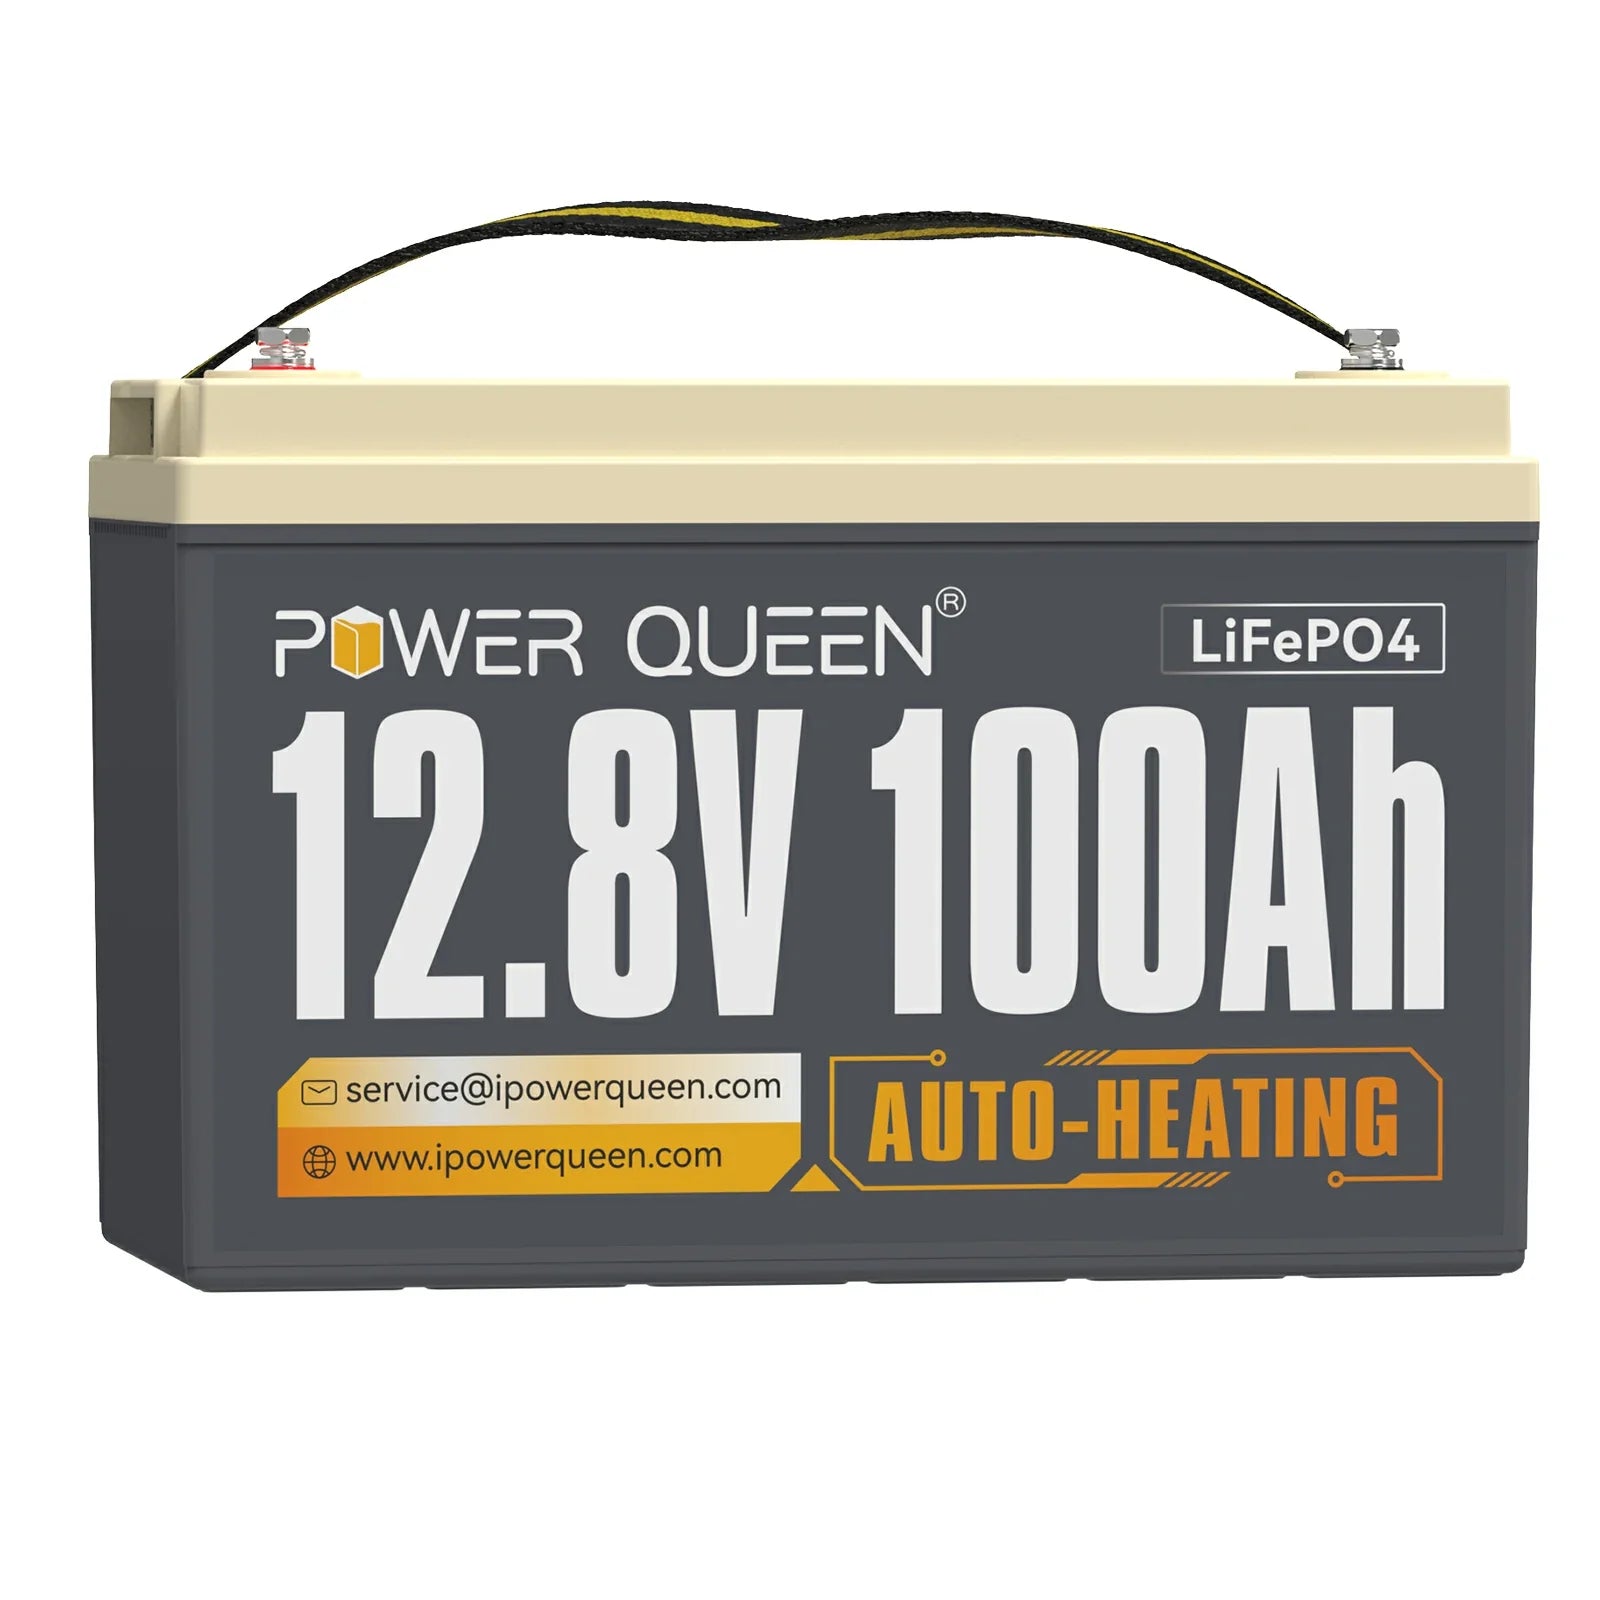 Power Queen 12,8 V 100 Ah zelfverwarmende LiFePO4-batterij, ingebouwd 100 A BMS